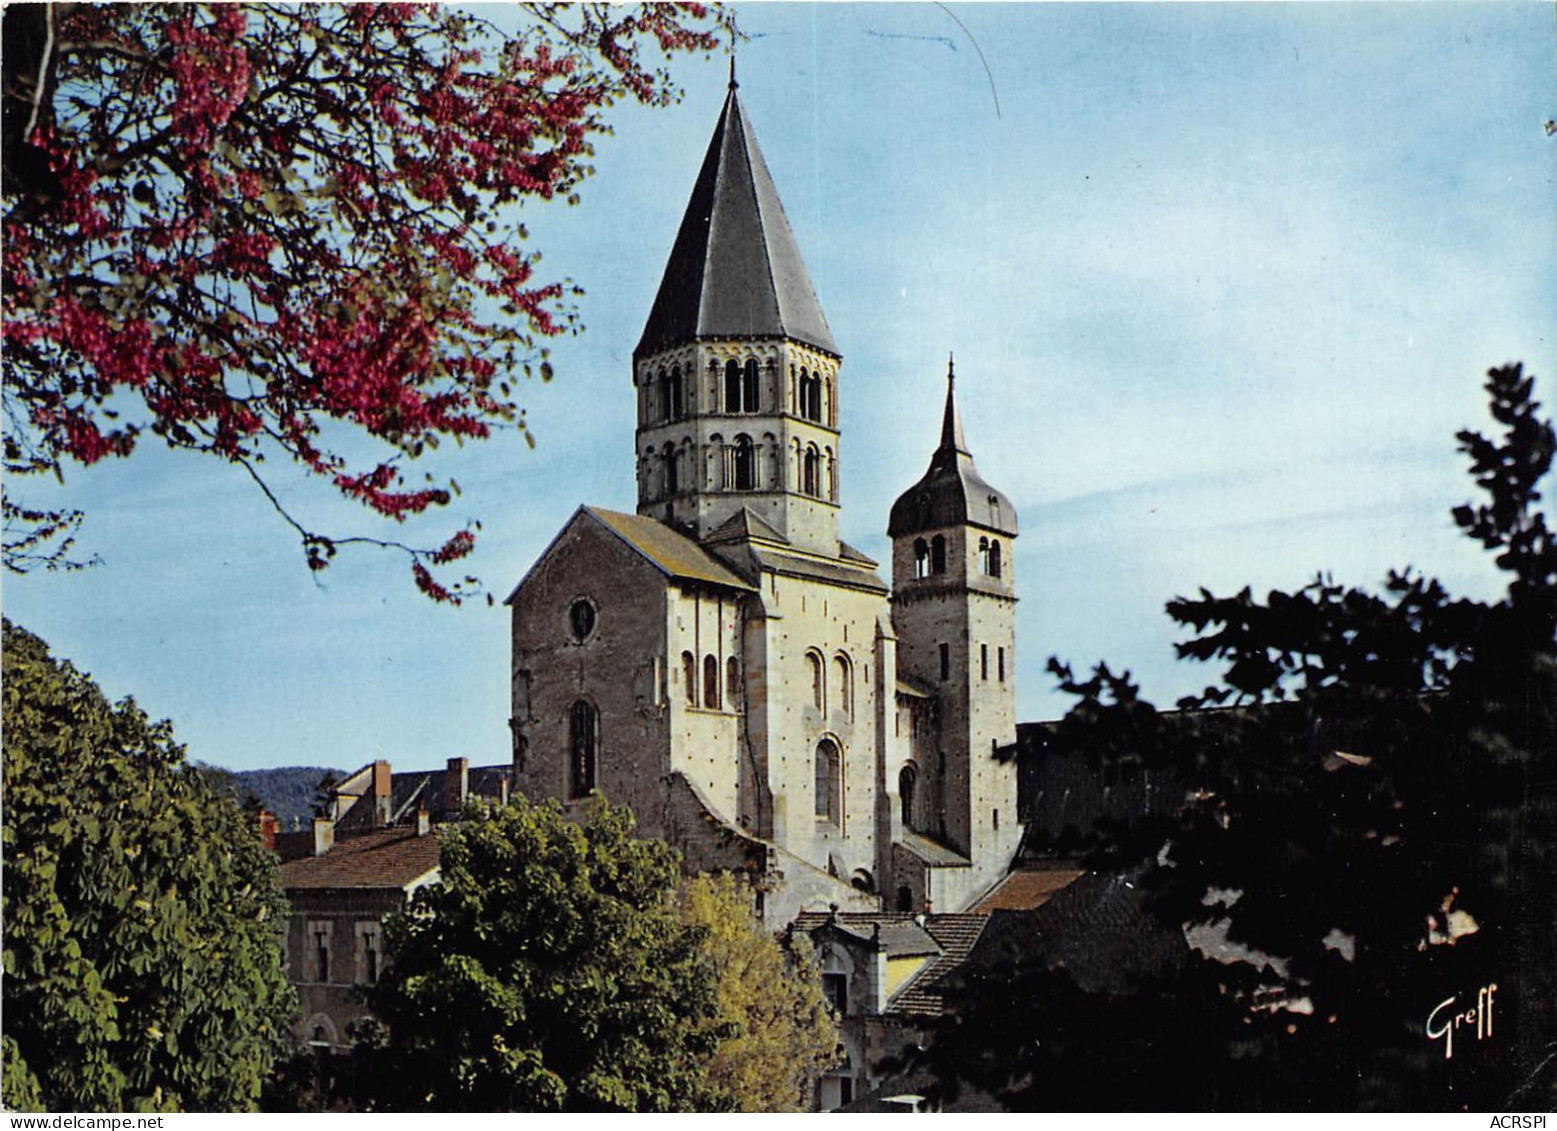 CLUNY Abbaye De Cluny Clocher De L Eau Benite Et Clocher De L Horloge 25(scan Recto-verso) MA2268 - Cluny